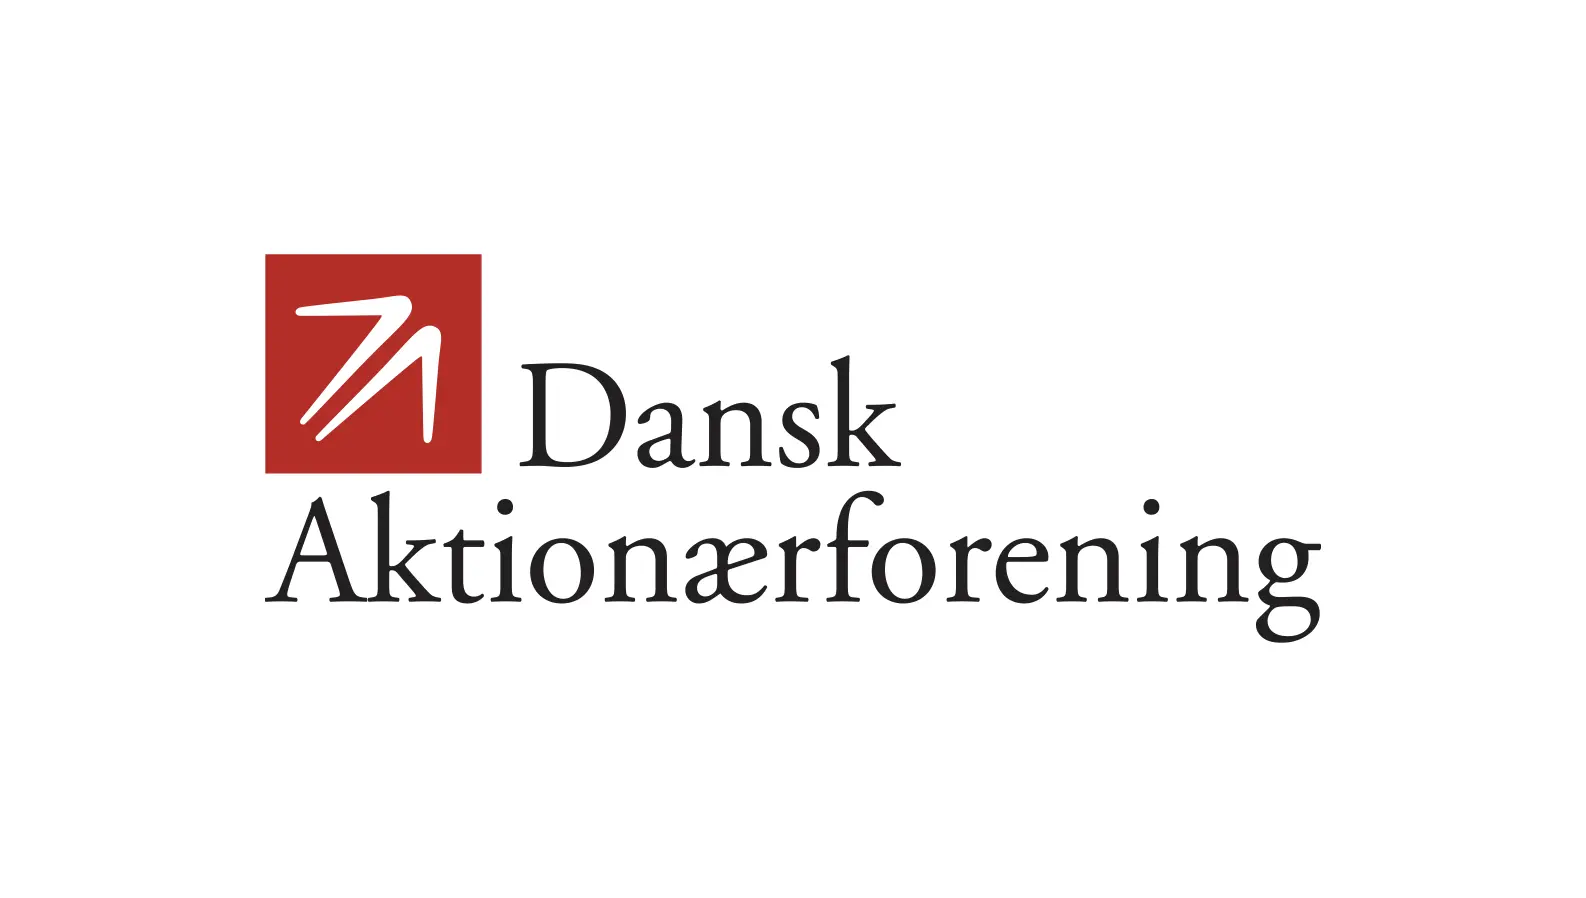 Dansk Aktionærforening